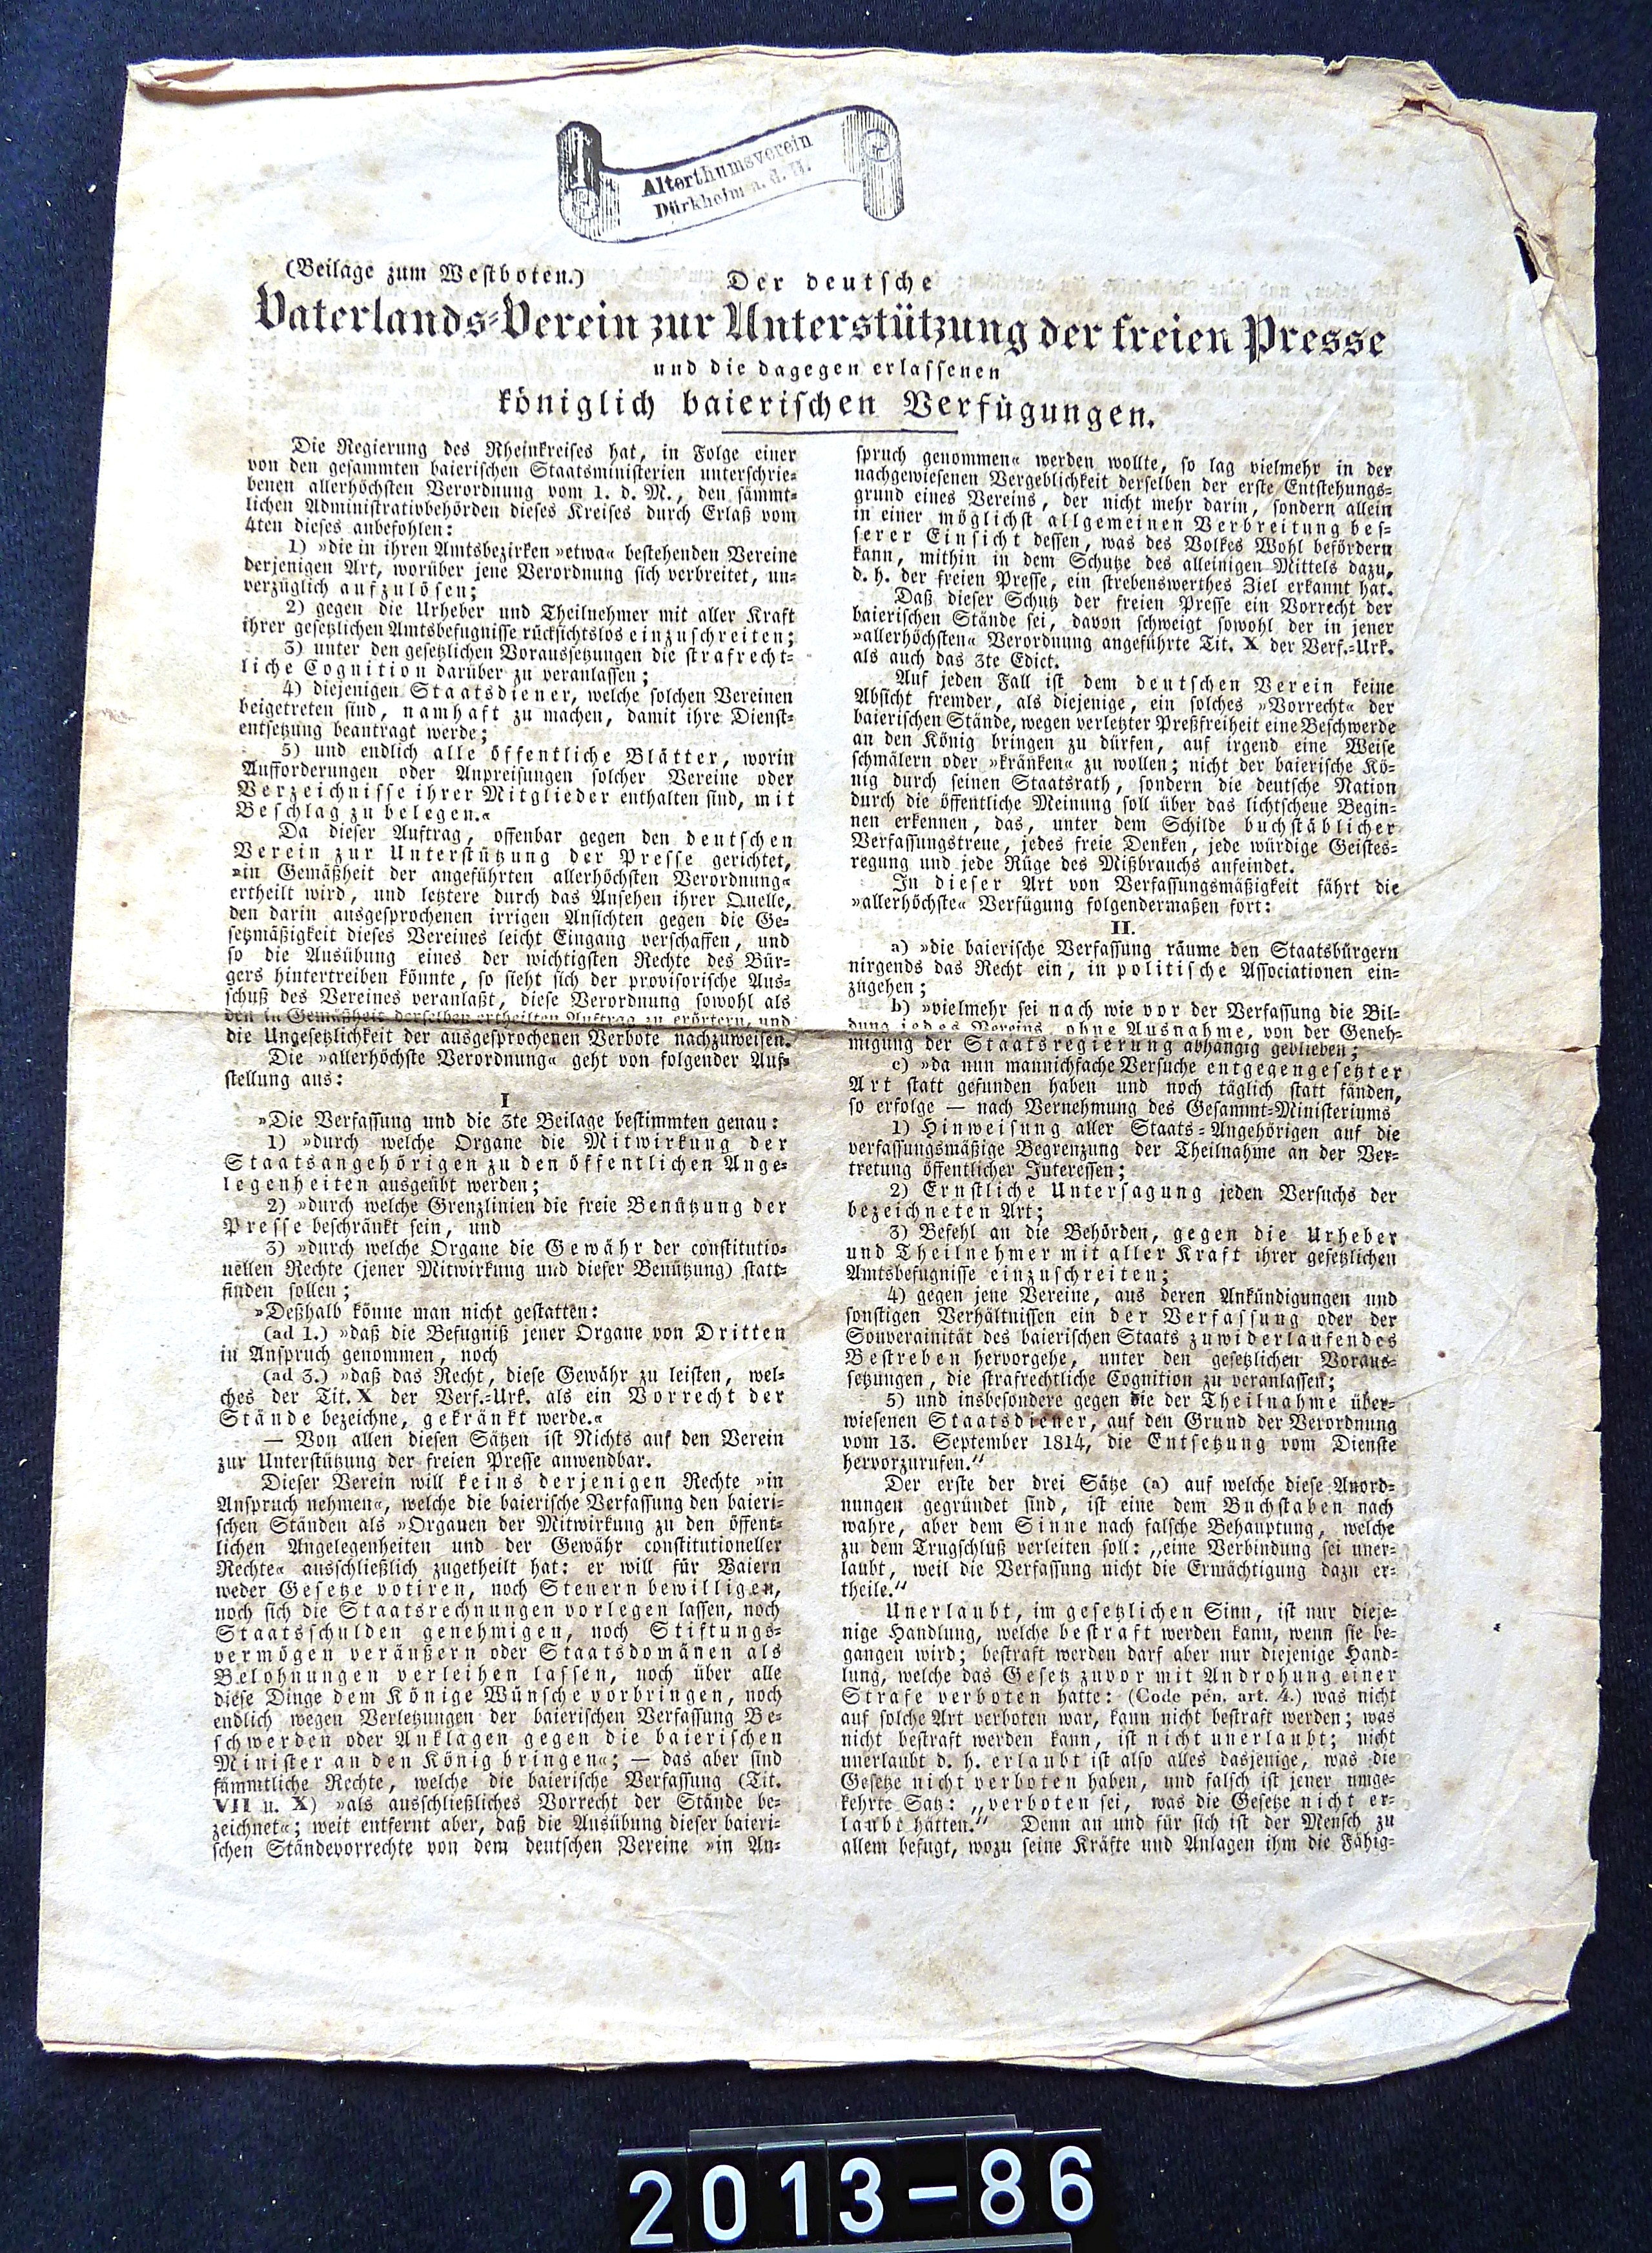 Blatt: "Vaterlandsverein zur Unterstützung der freien Presse", Neustadt, 1832 (Stadtmuseum Bad Dürkheim, Museumsgesellschaft Bad Dürkheim e.V. CC BY-NC-SA)